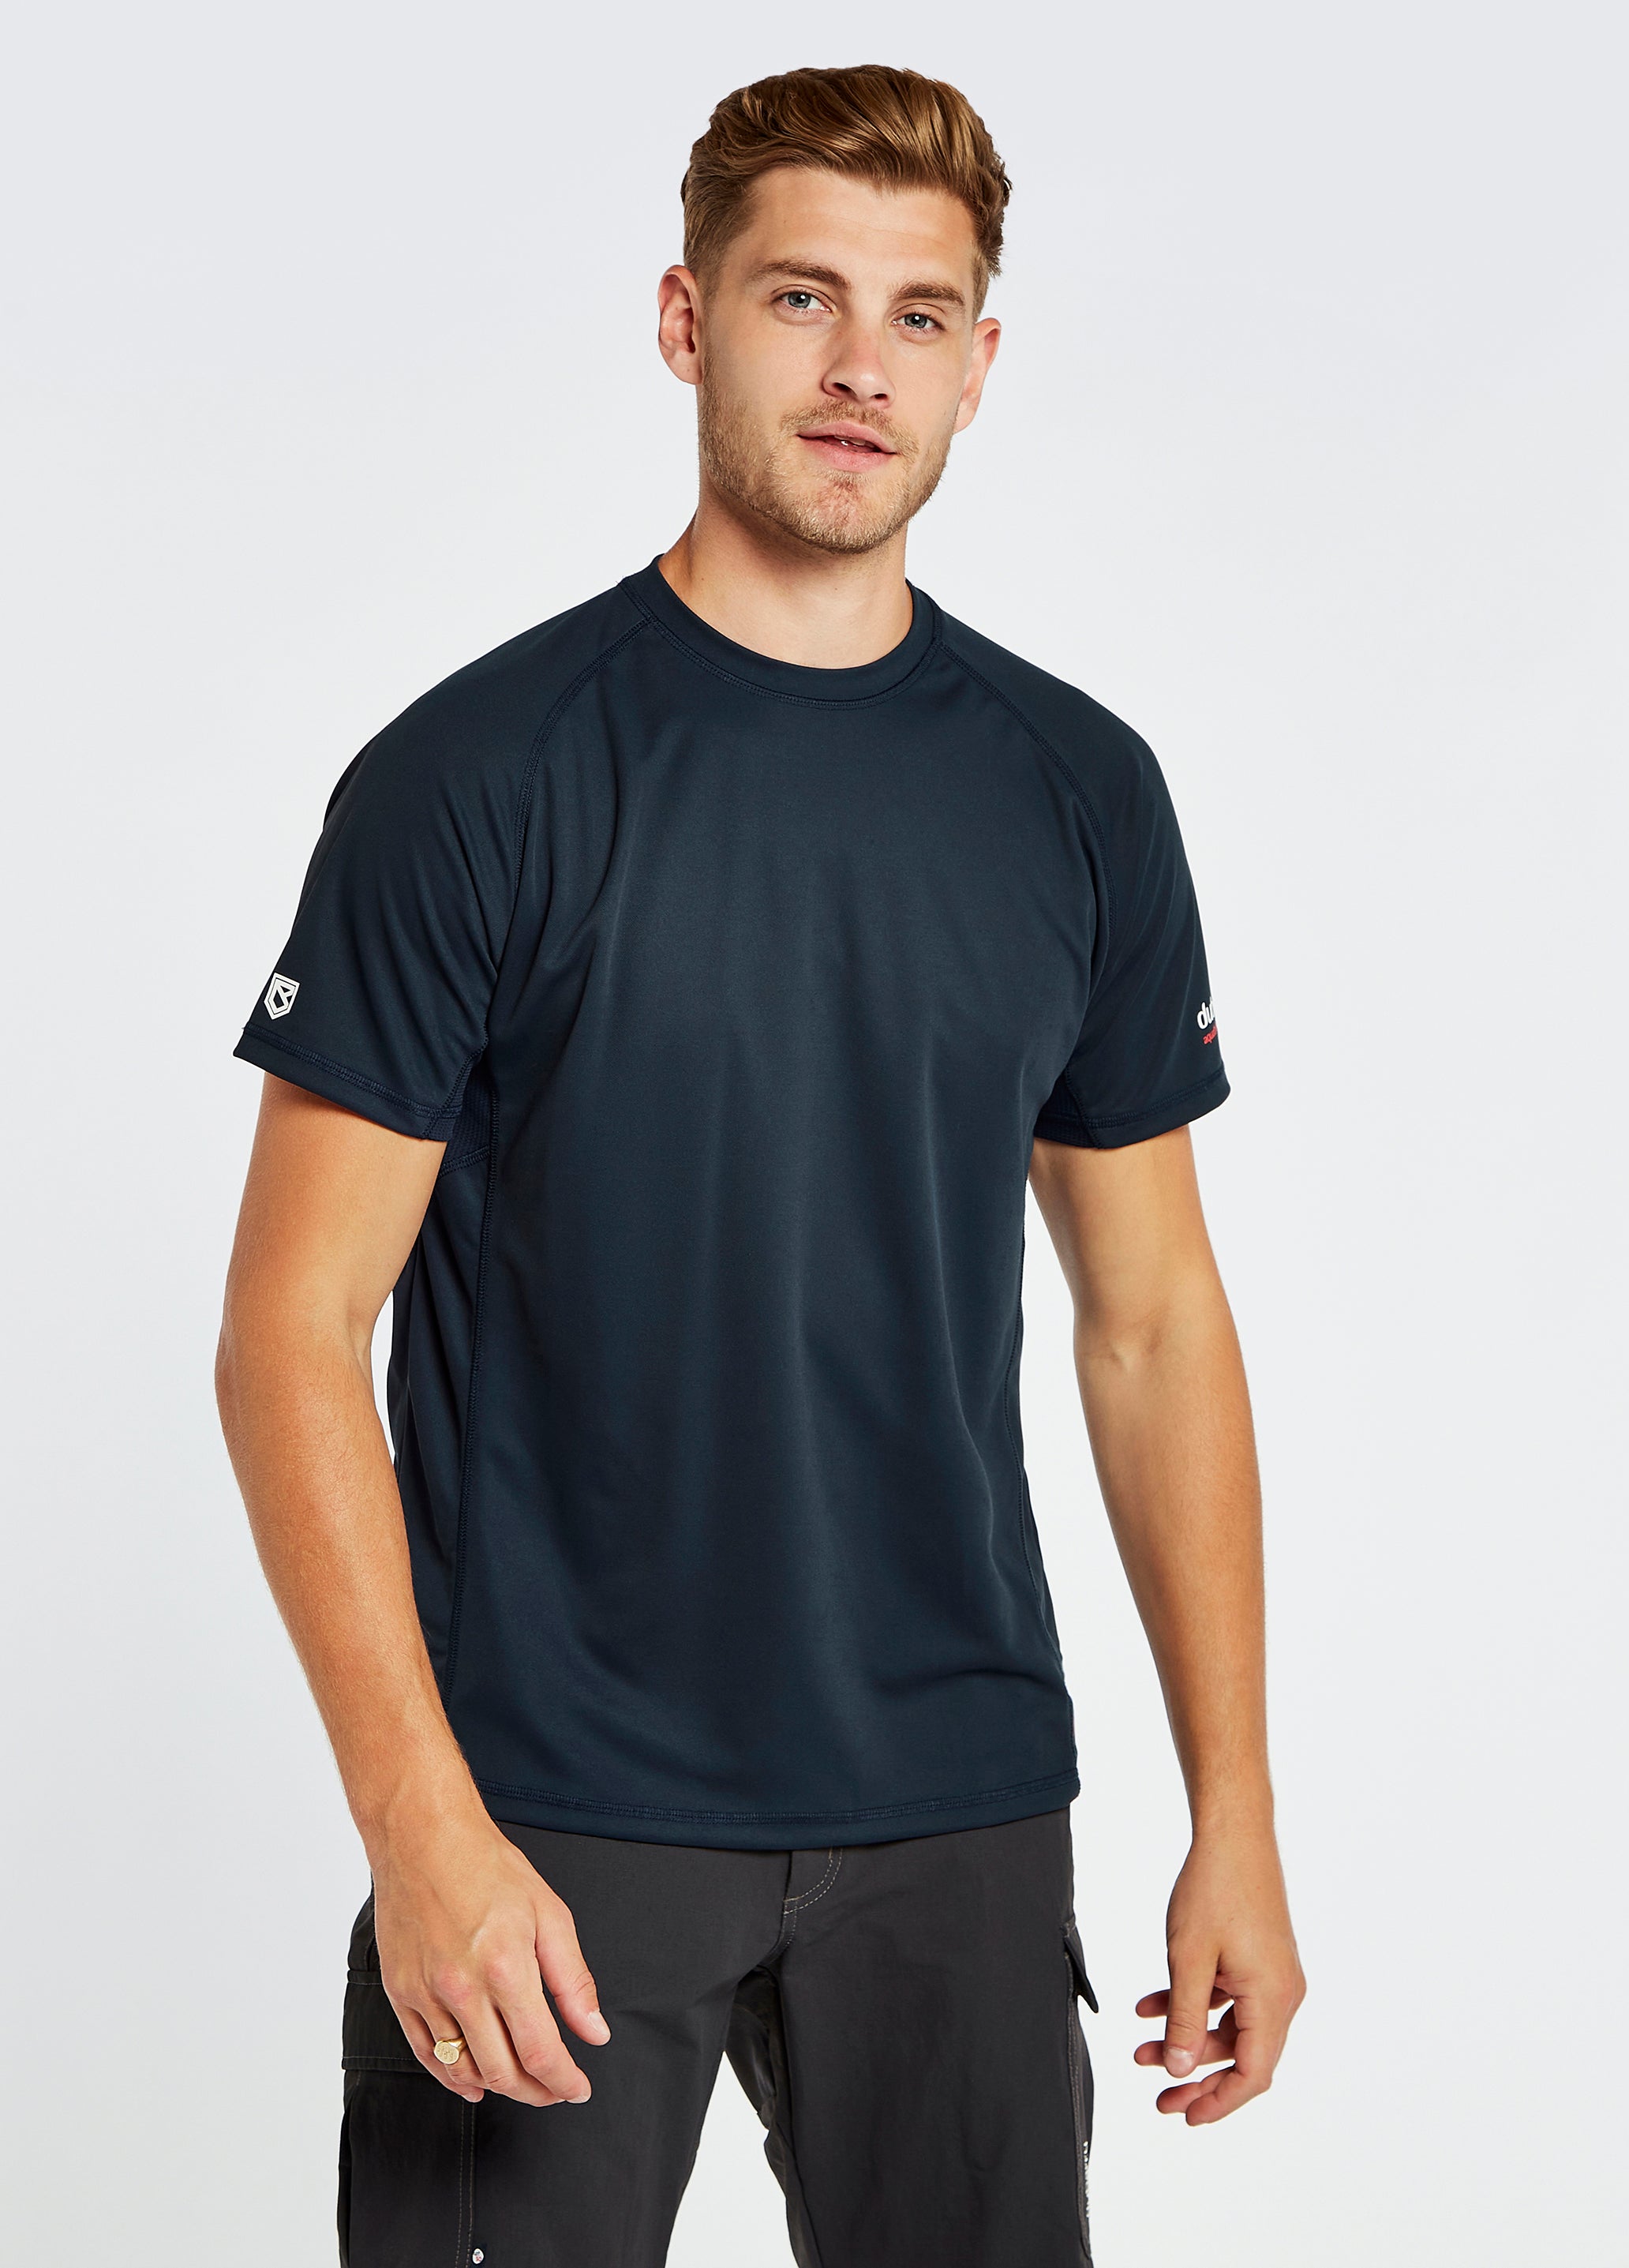 Tangier Men’s Short-Sleeved Technical T-Shirt - Navy